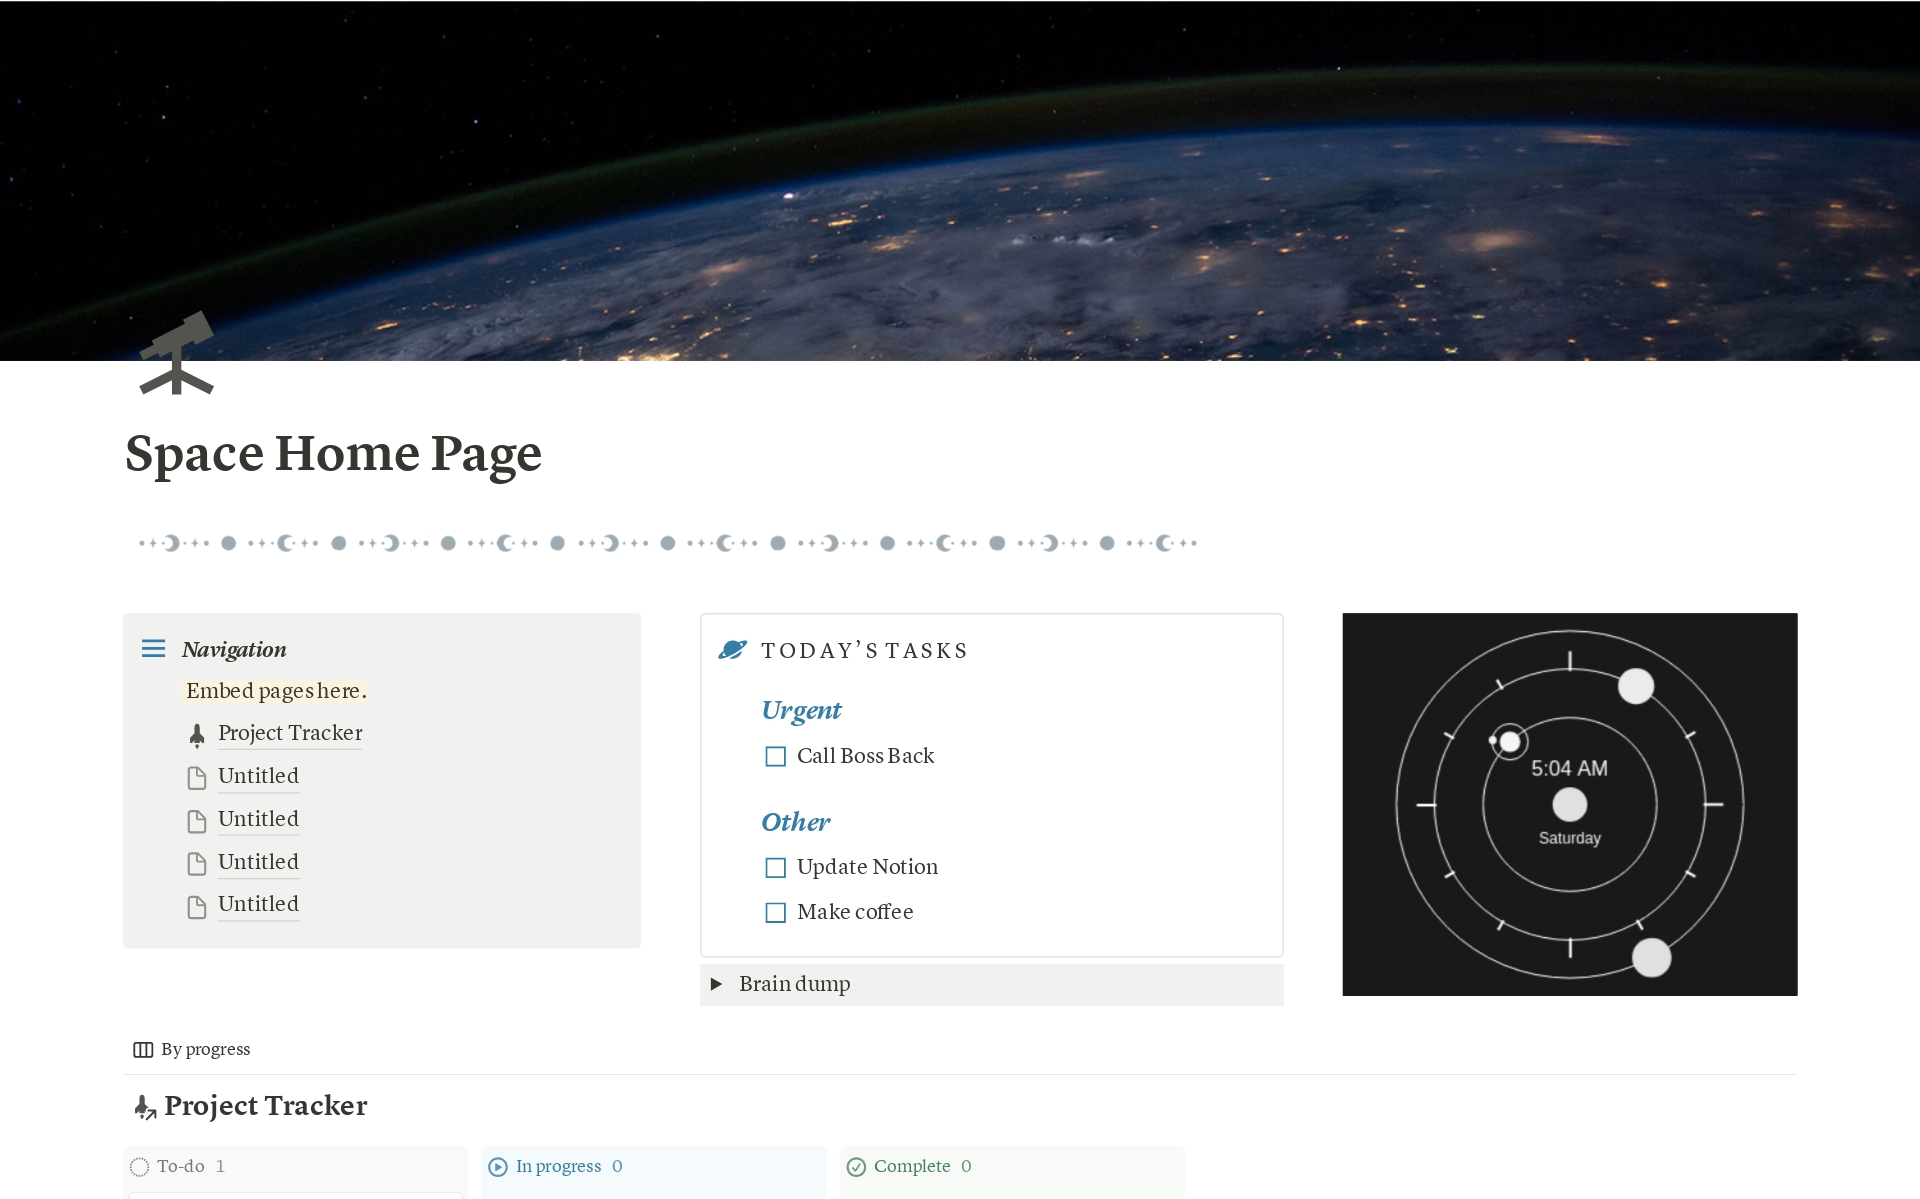 Uma prévia do modelo para Space Home Page